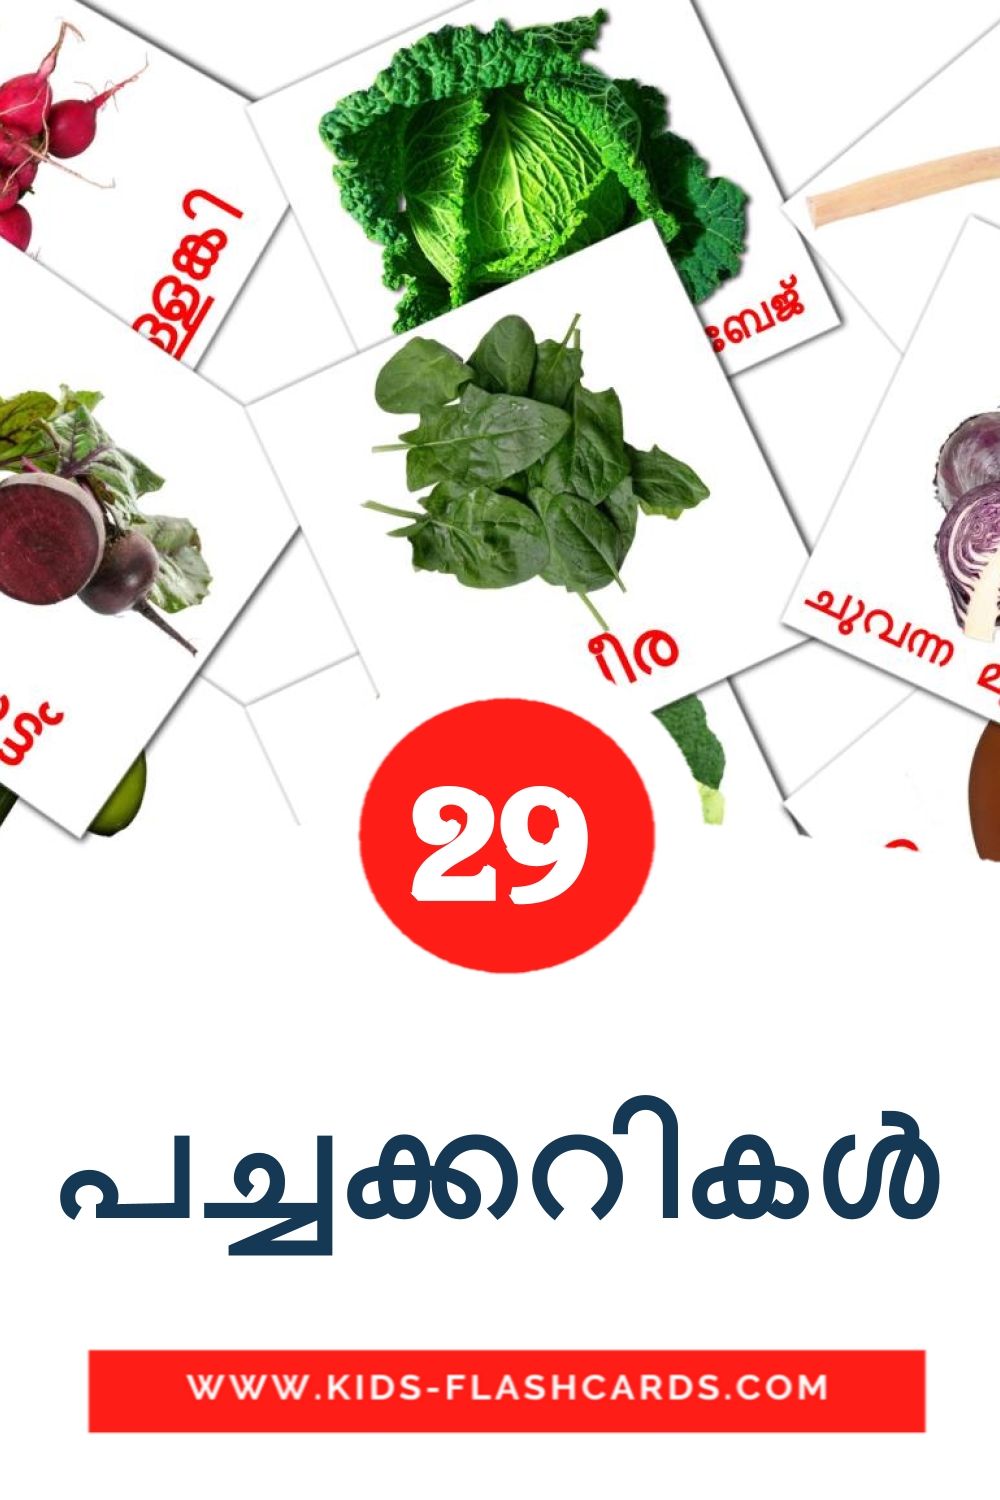 29 tarjetas didacticas de പച്ചക്കറികൾ para el jardín de infancia en malayalam